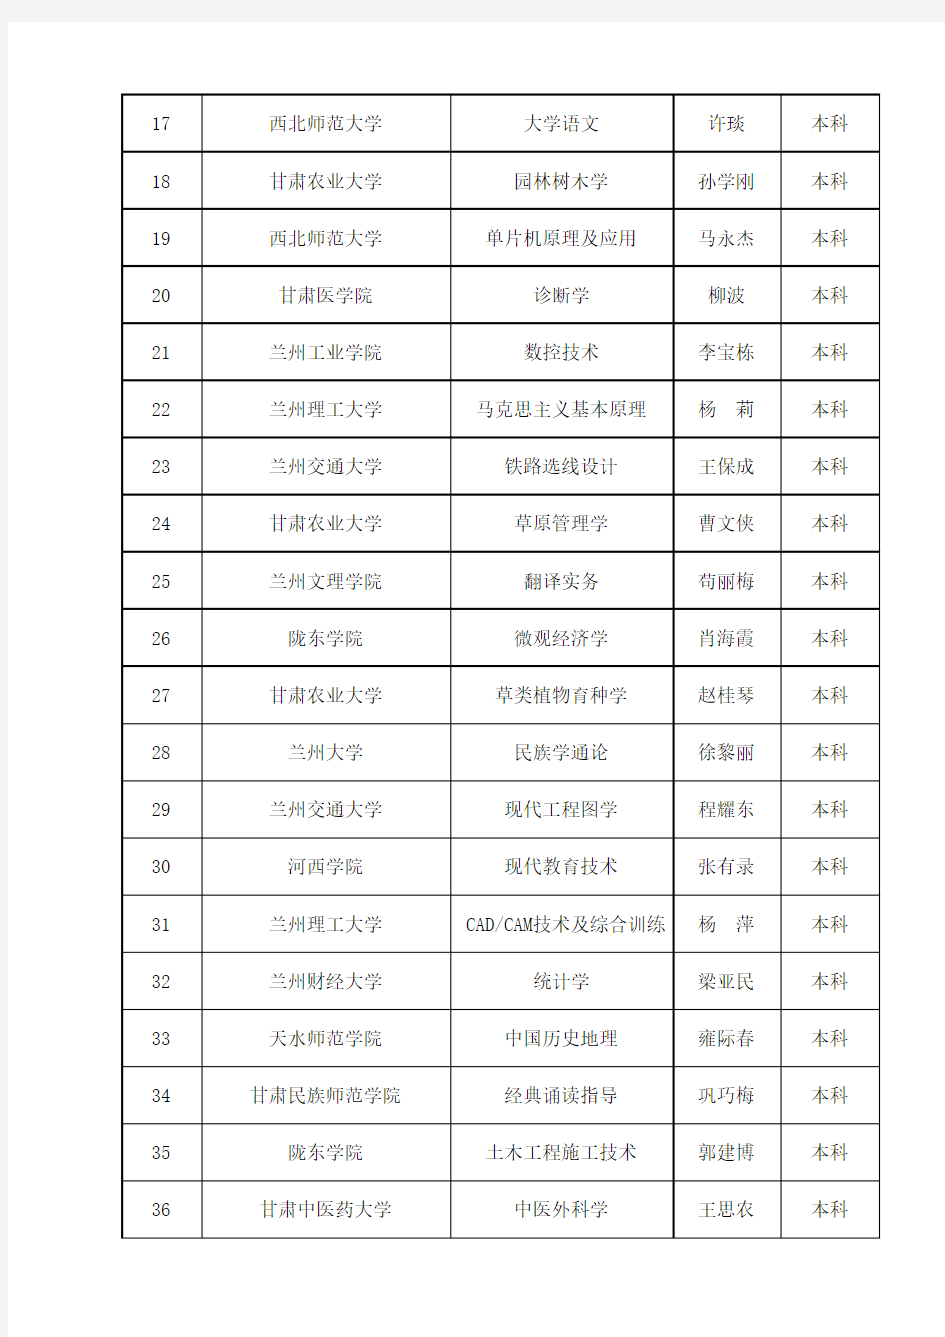 2017年甘肃省高校精品资源共享课名单